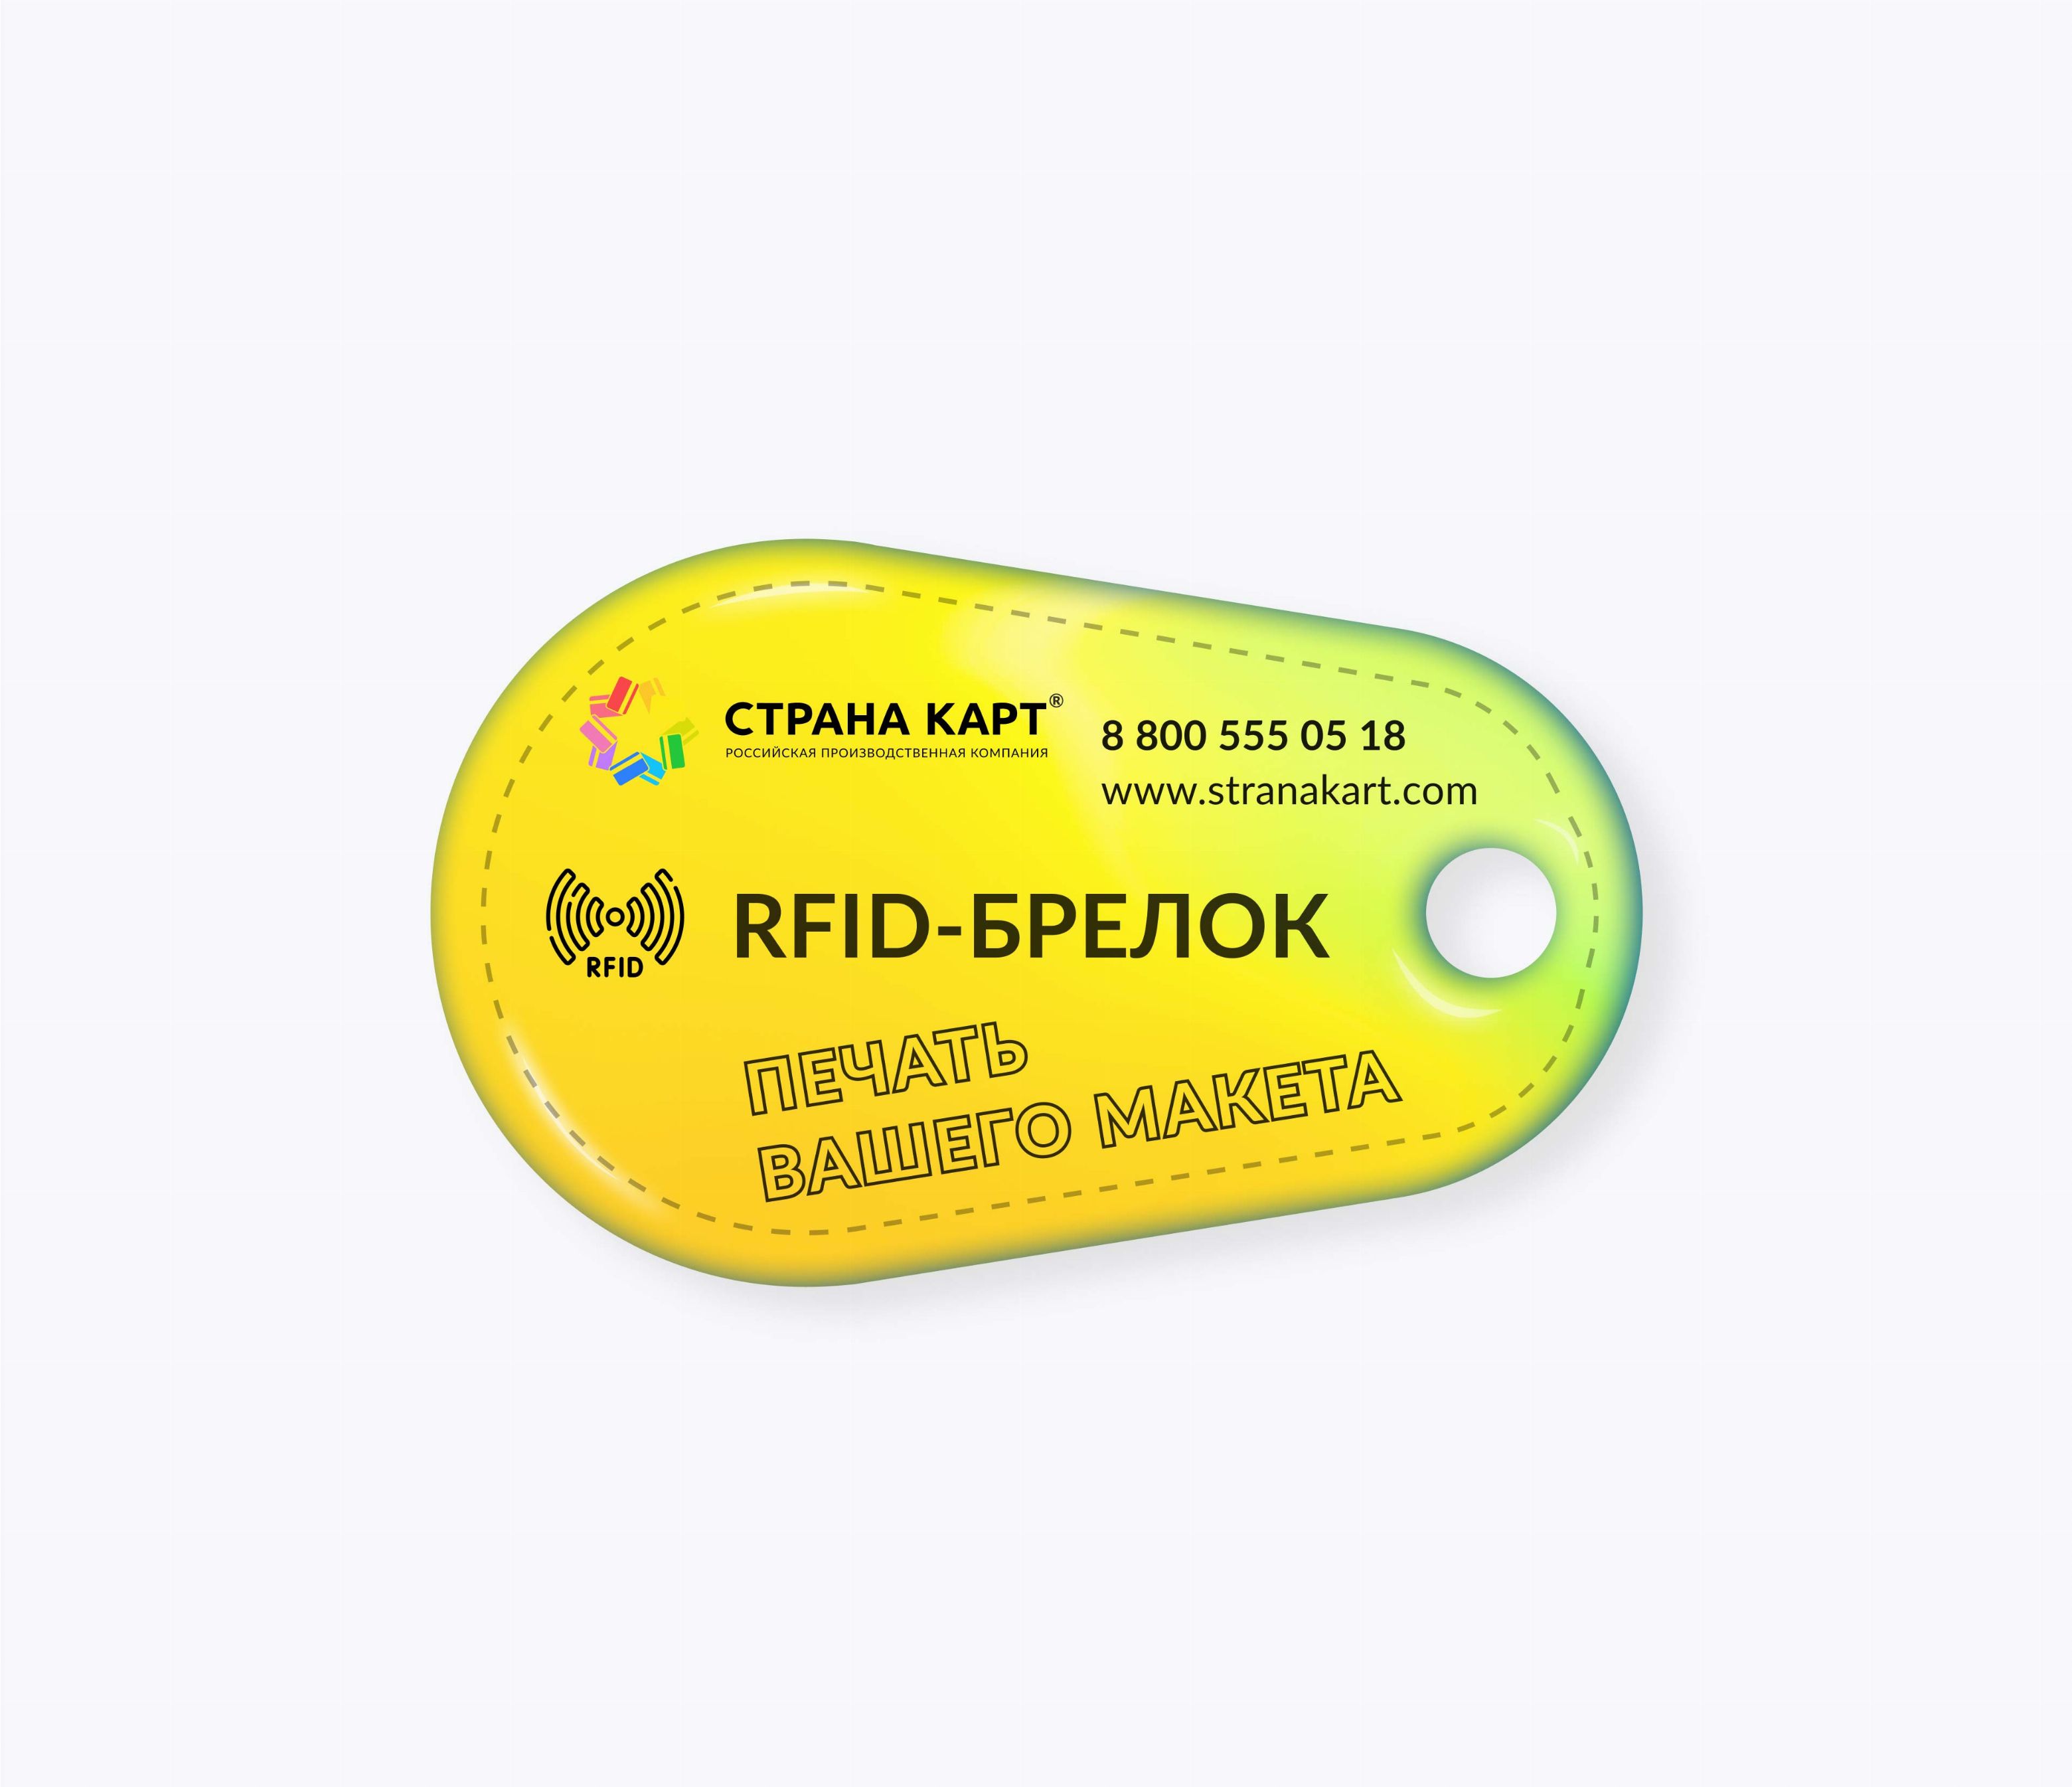 Каплевидные RFID-брелоки NEOKEY® с чипом SMARTTAG 1k 7 byte UID RFID-брелоки NEOKEY® с чипом SMARTTAG 1k 7 byte UID